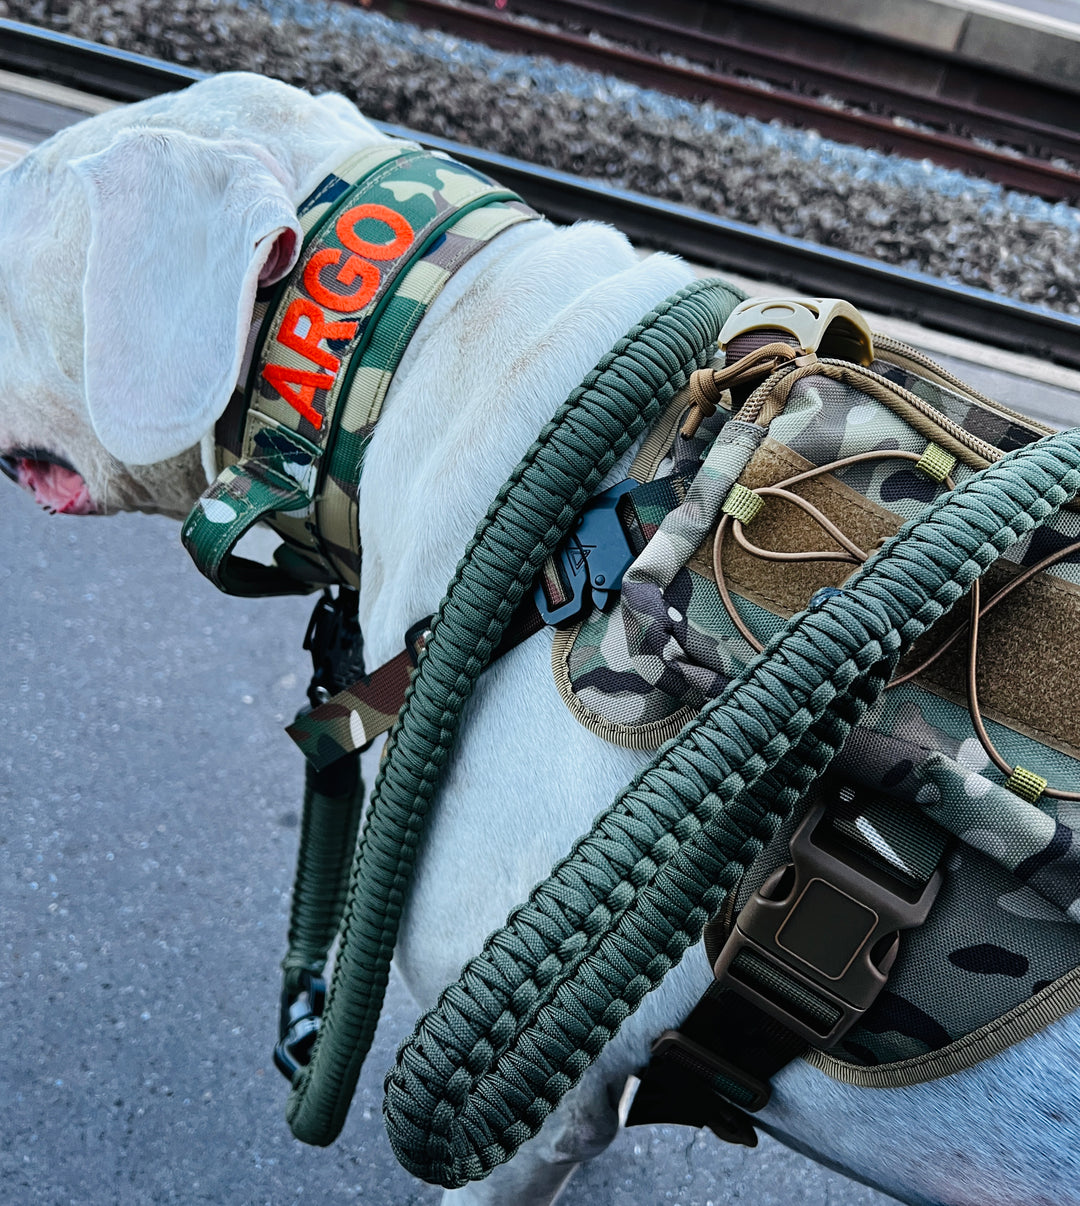 Rambo Leine Messing Karabiner gross grosse Hunde - Mit Kurzhaltegriff und 360Grad Wirbel - 100kg+ (schwarz/army grün)